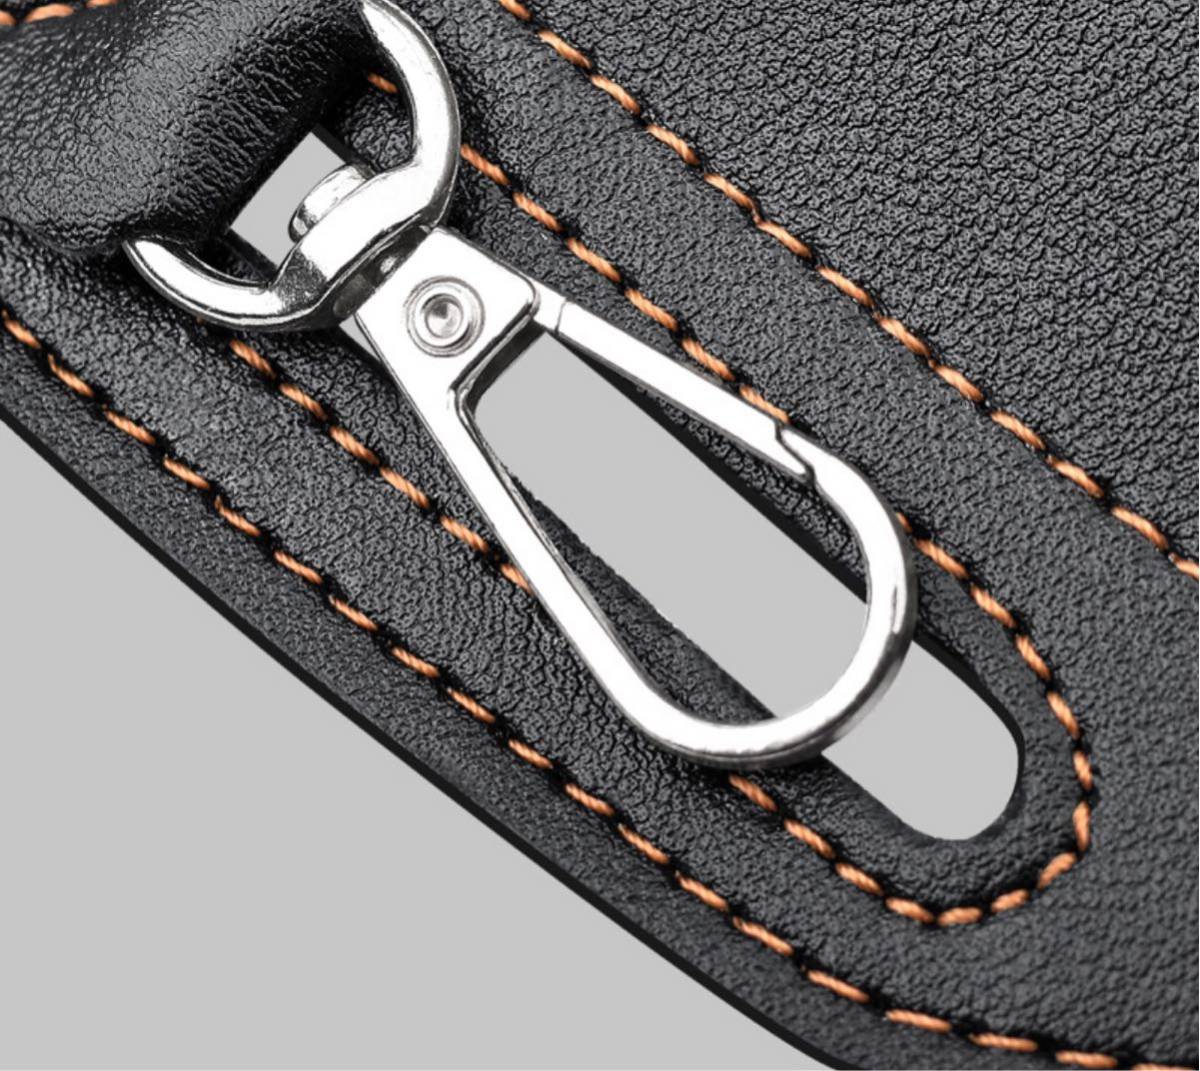  black 2 pcs storage belt pouch men's leather smartphone belt case leather 2 pcs storage belt iphone ho ru Star leather smartphone 2 pcs keep case mobile case 